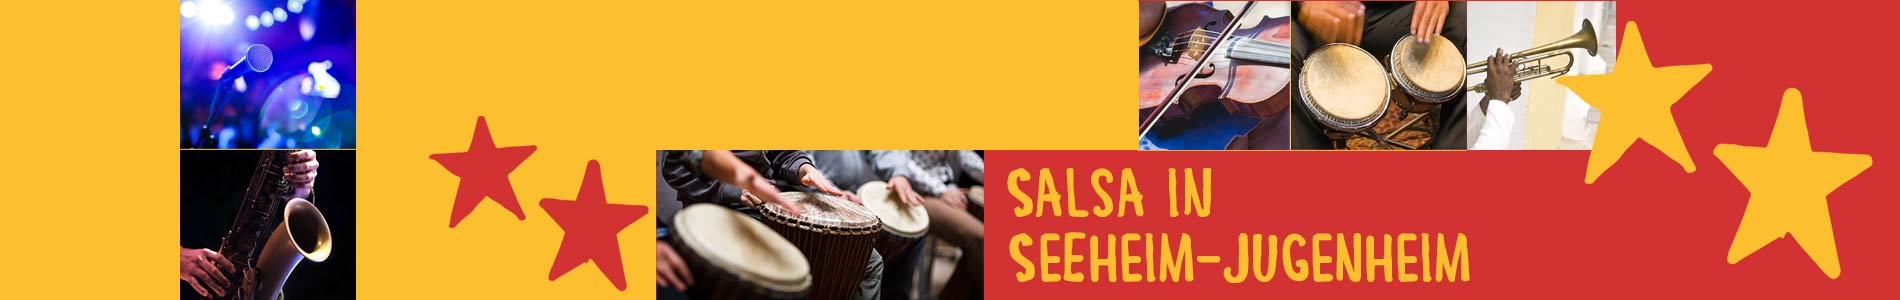 Salsa in Seeheim-Jugenheim – Salsa lernen und tanzen, Tanzkurse, Partys, Veranstaltungen